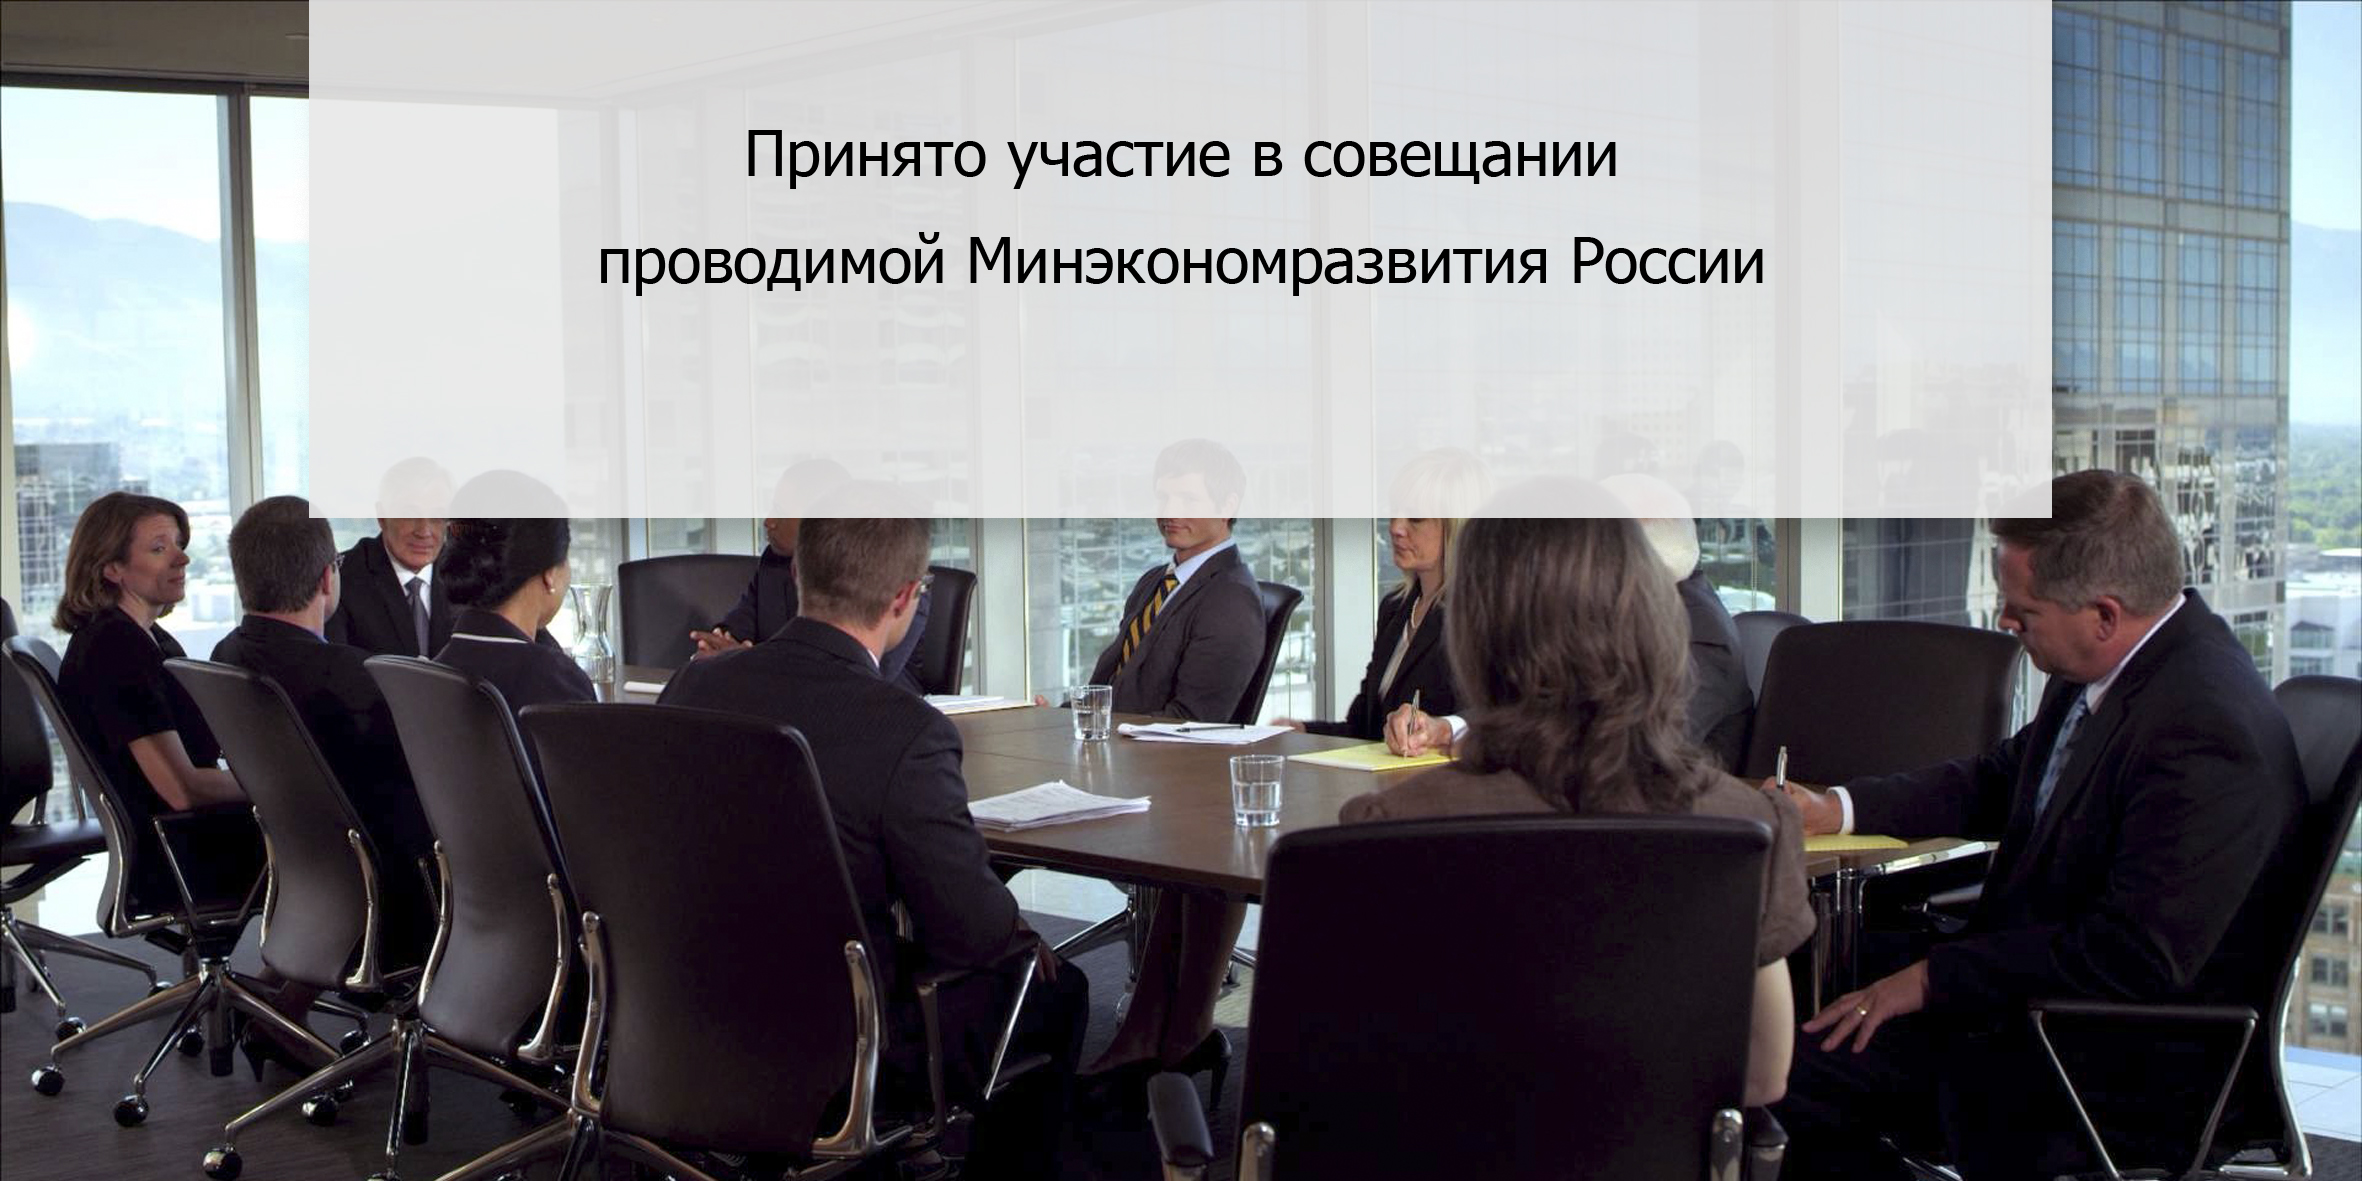 Принято участие в совещании  проводимой Минэкономразвития России